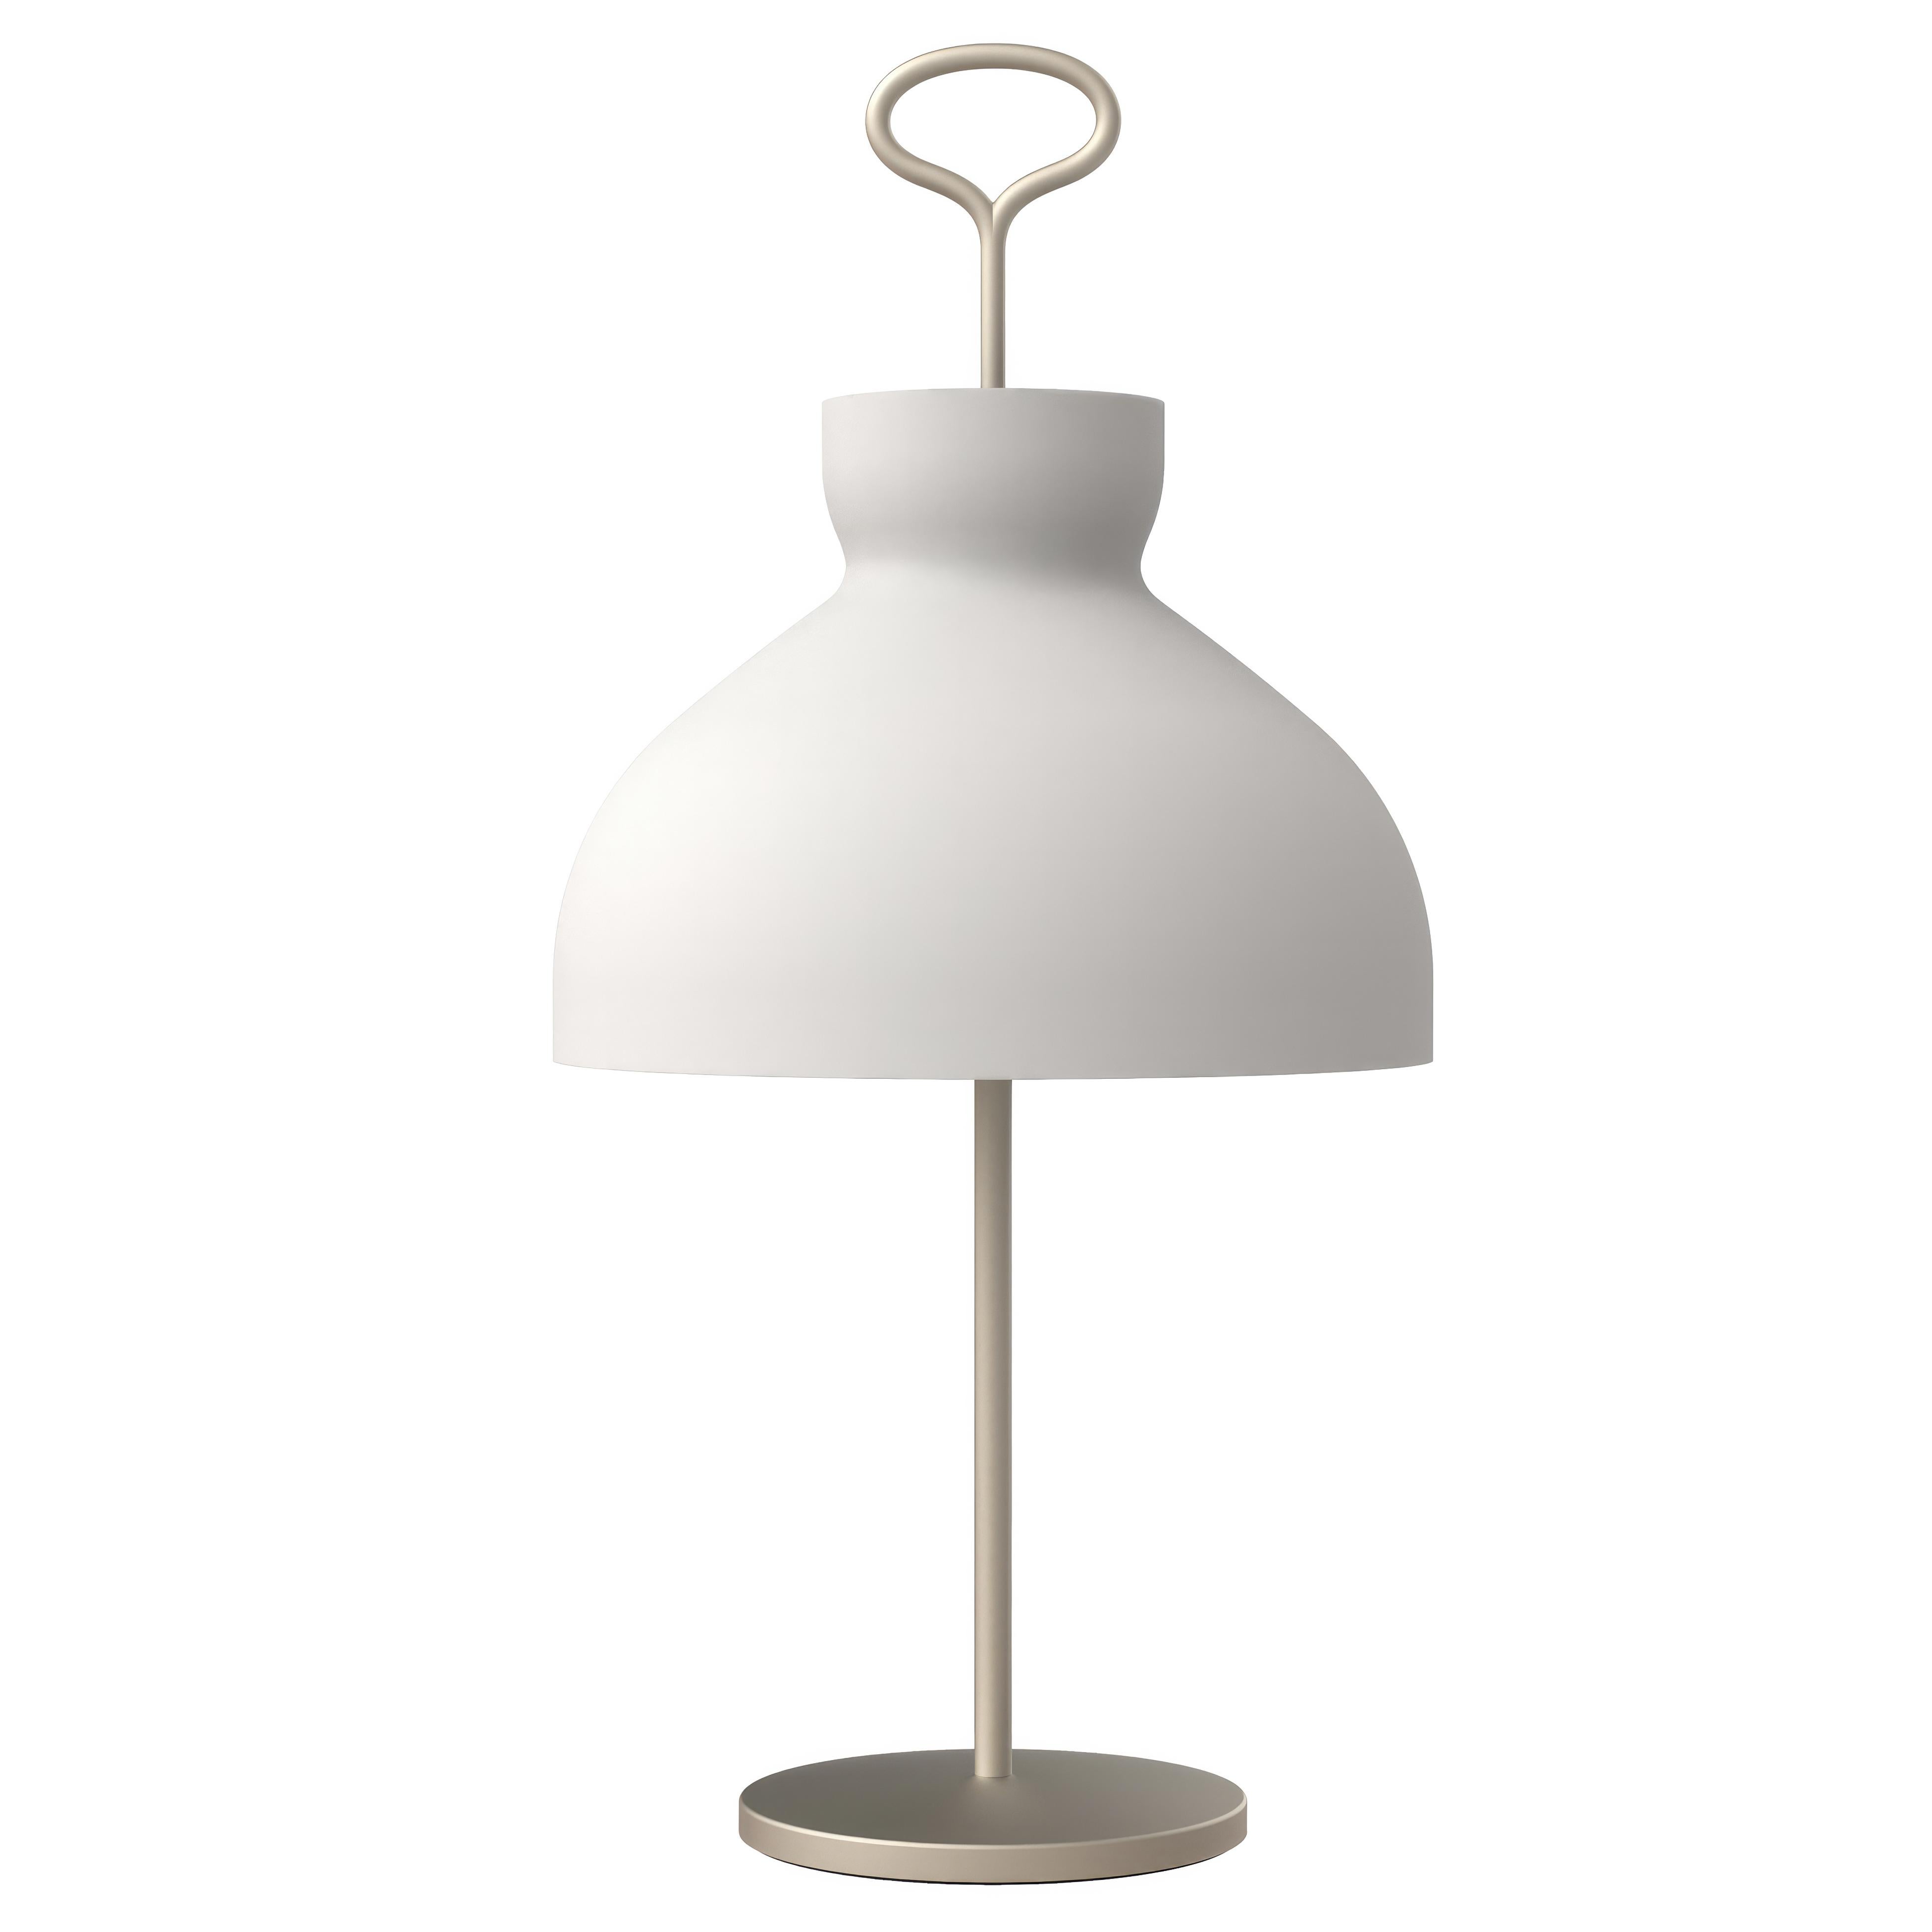 Large Ignazio Gardella 'Arenzano' Table Lamp in Brass and Glass for Tato Italia For Sale 6